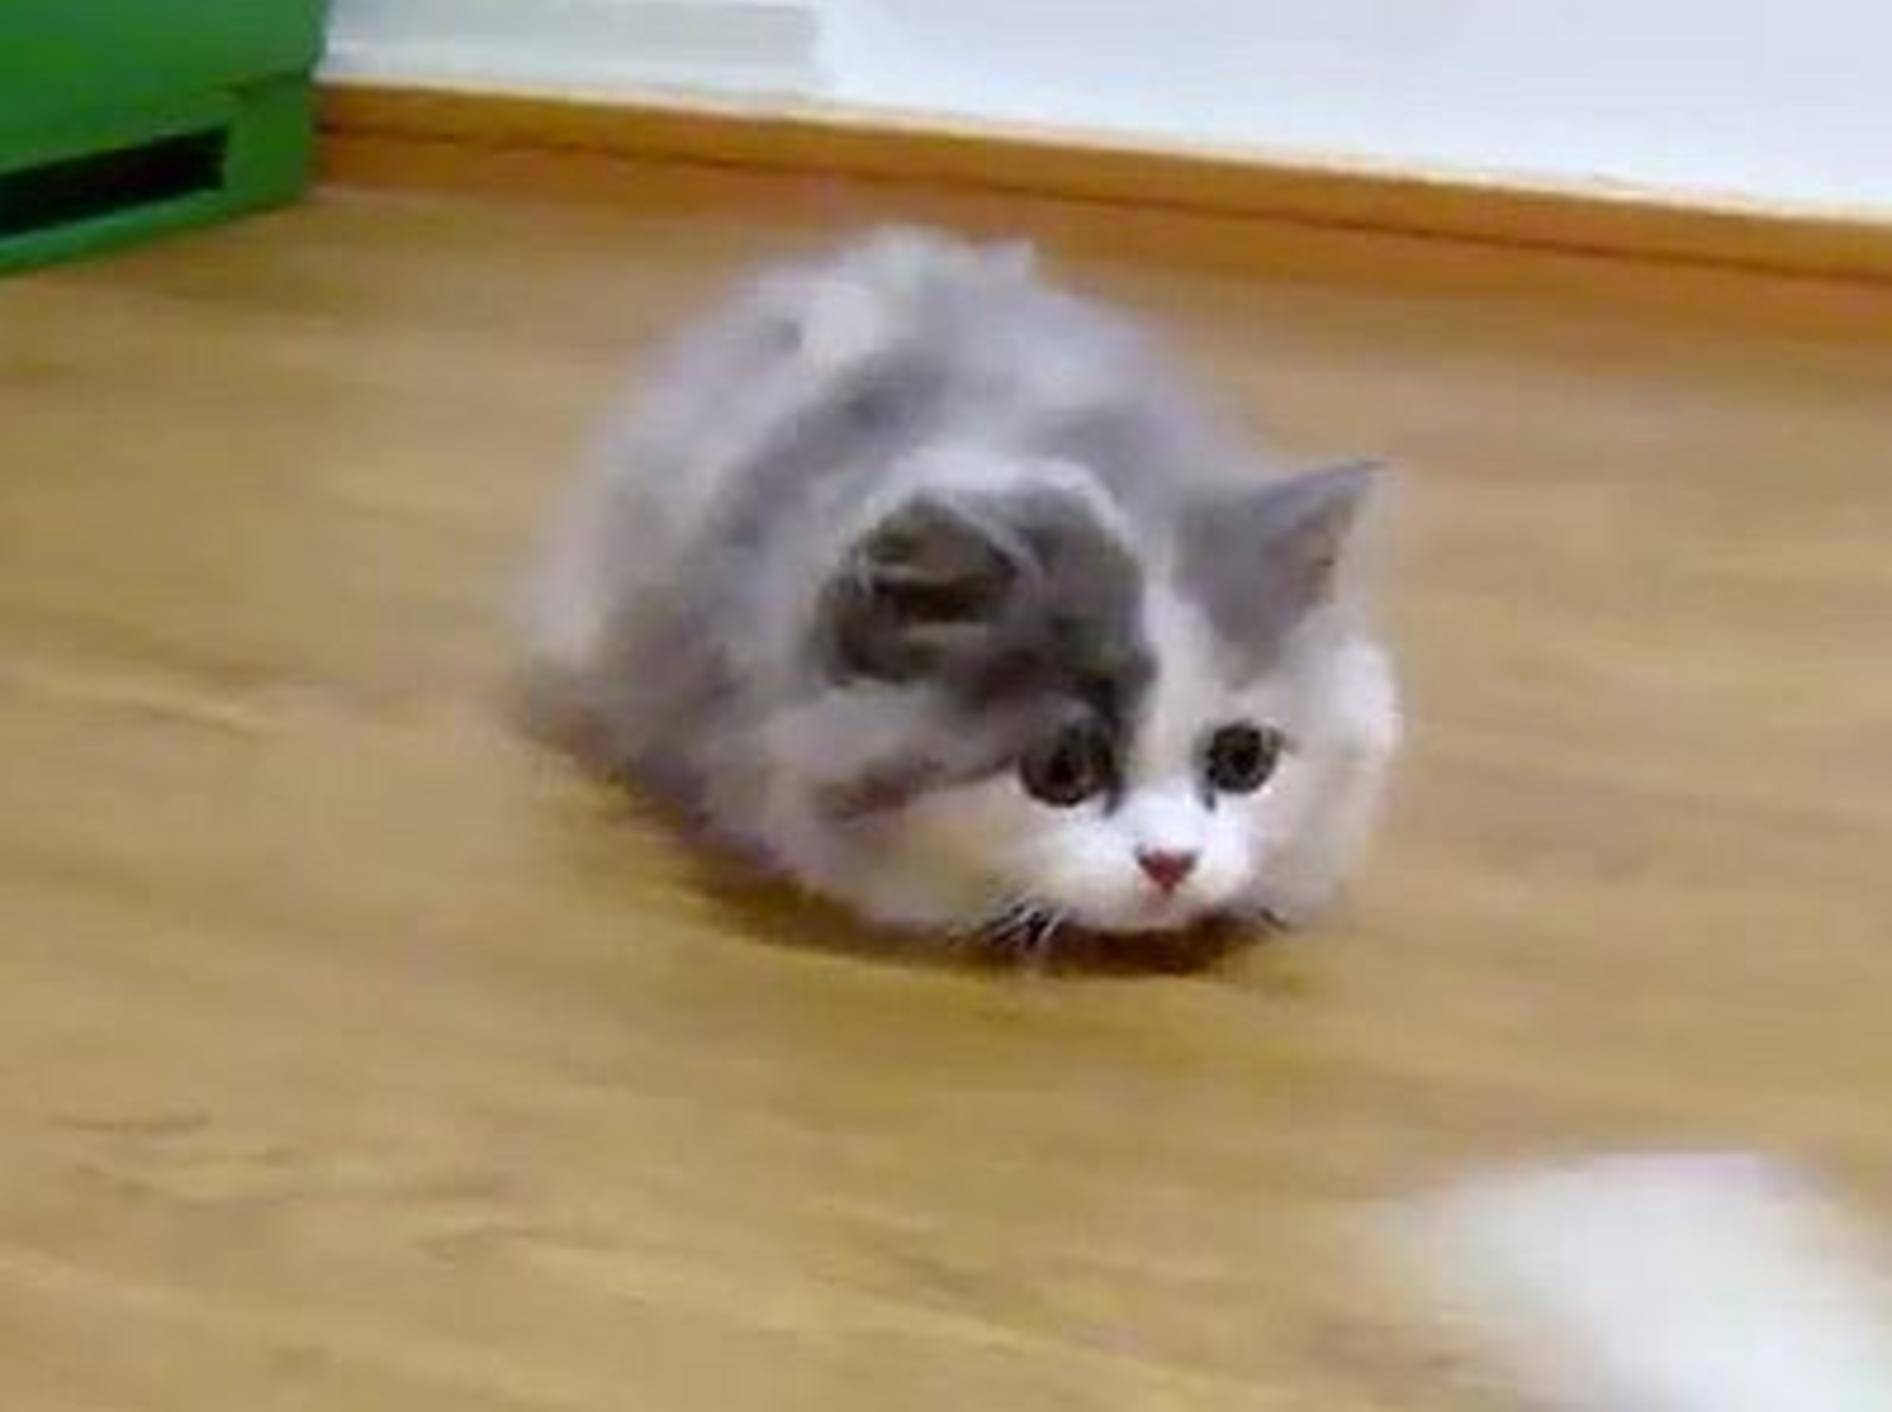 Flauschigstes verspieltes Kätzchen der Welt? — Bild: Youtube / roytar99